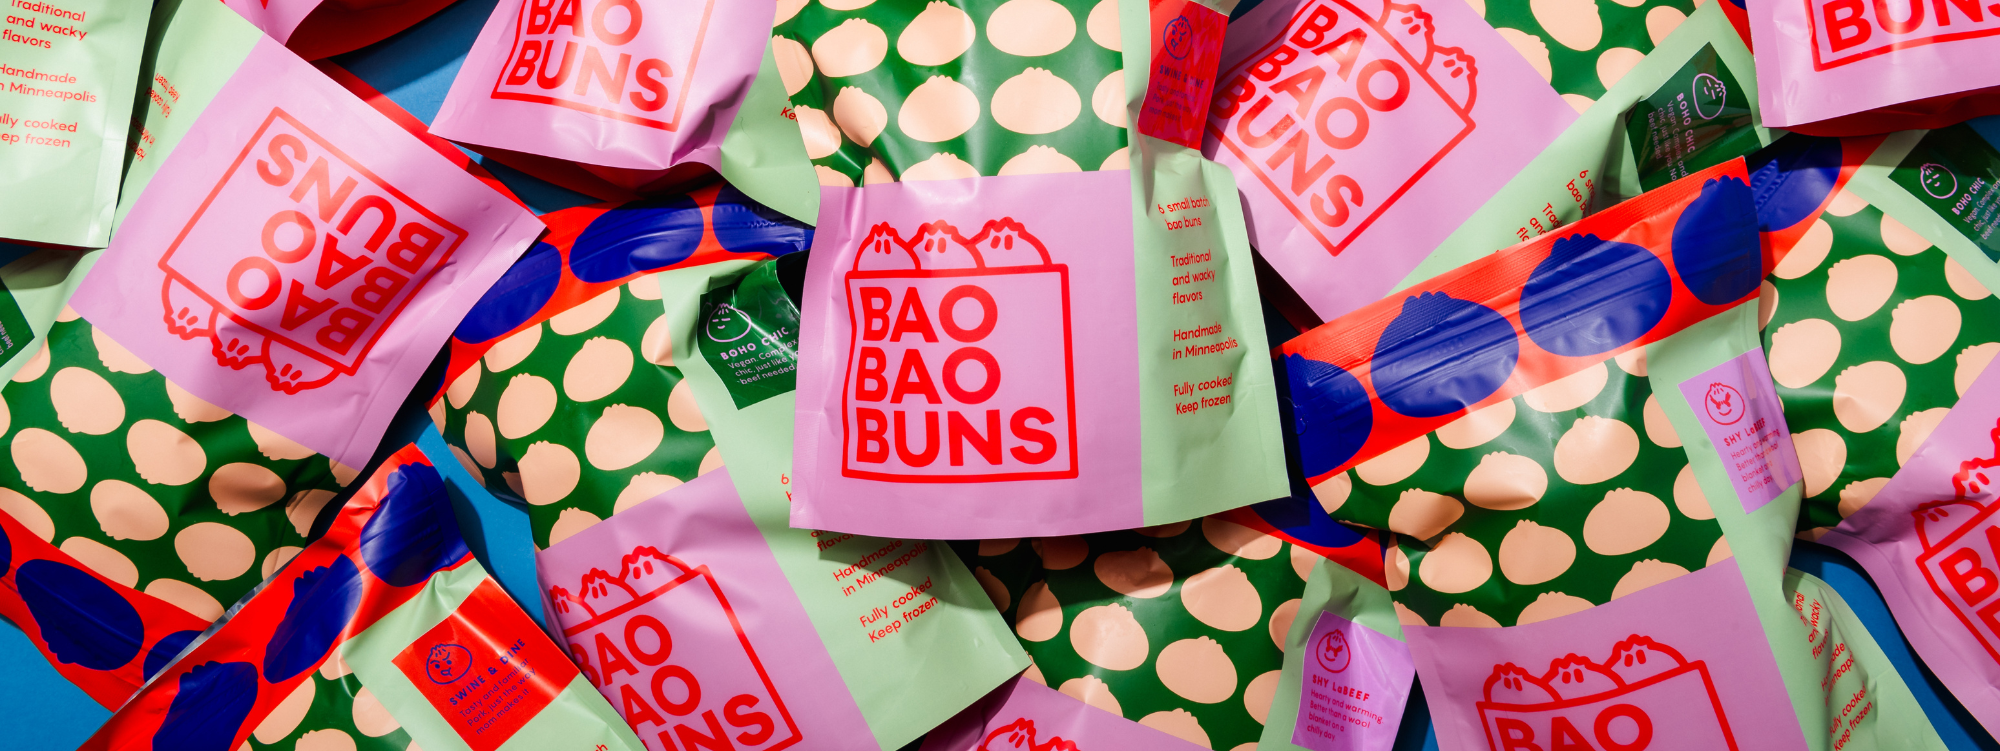 Bao Bao Buns packaging pile